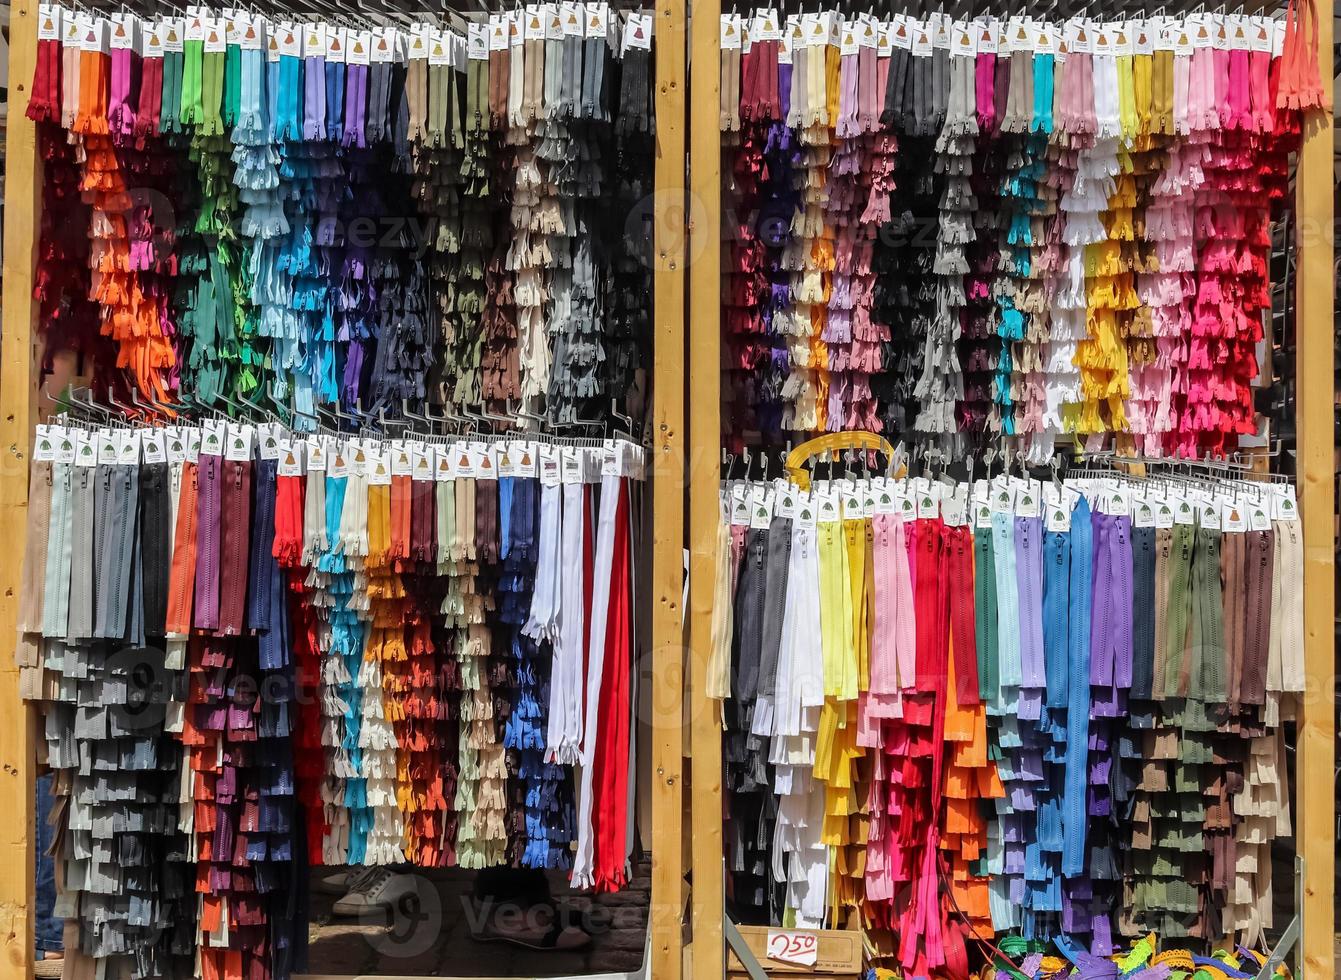 vista de cerca de muestras de cremalleras en diferentes colores encontradas en un mercado de telas. foto